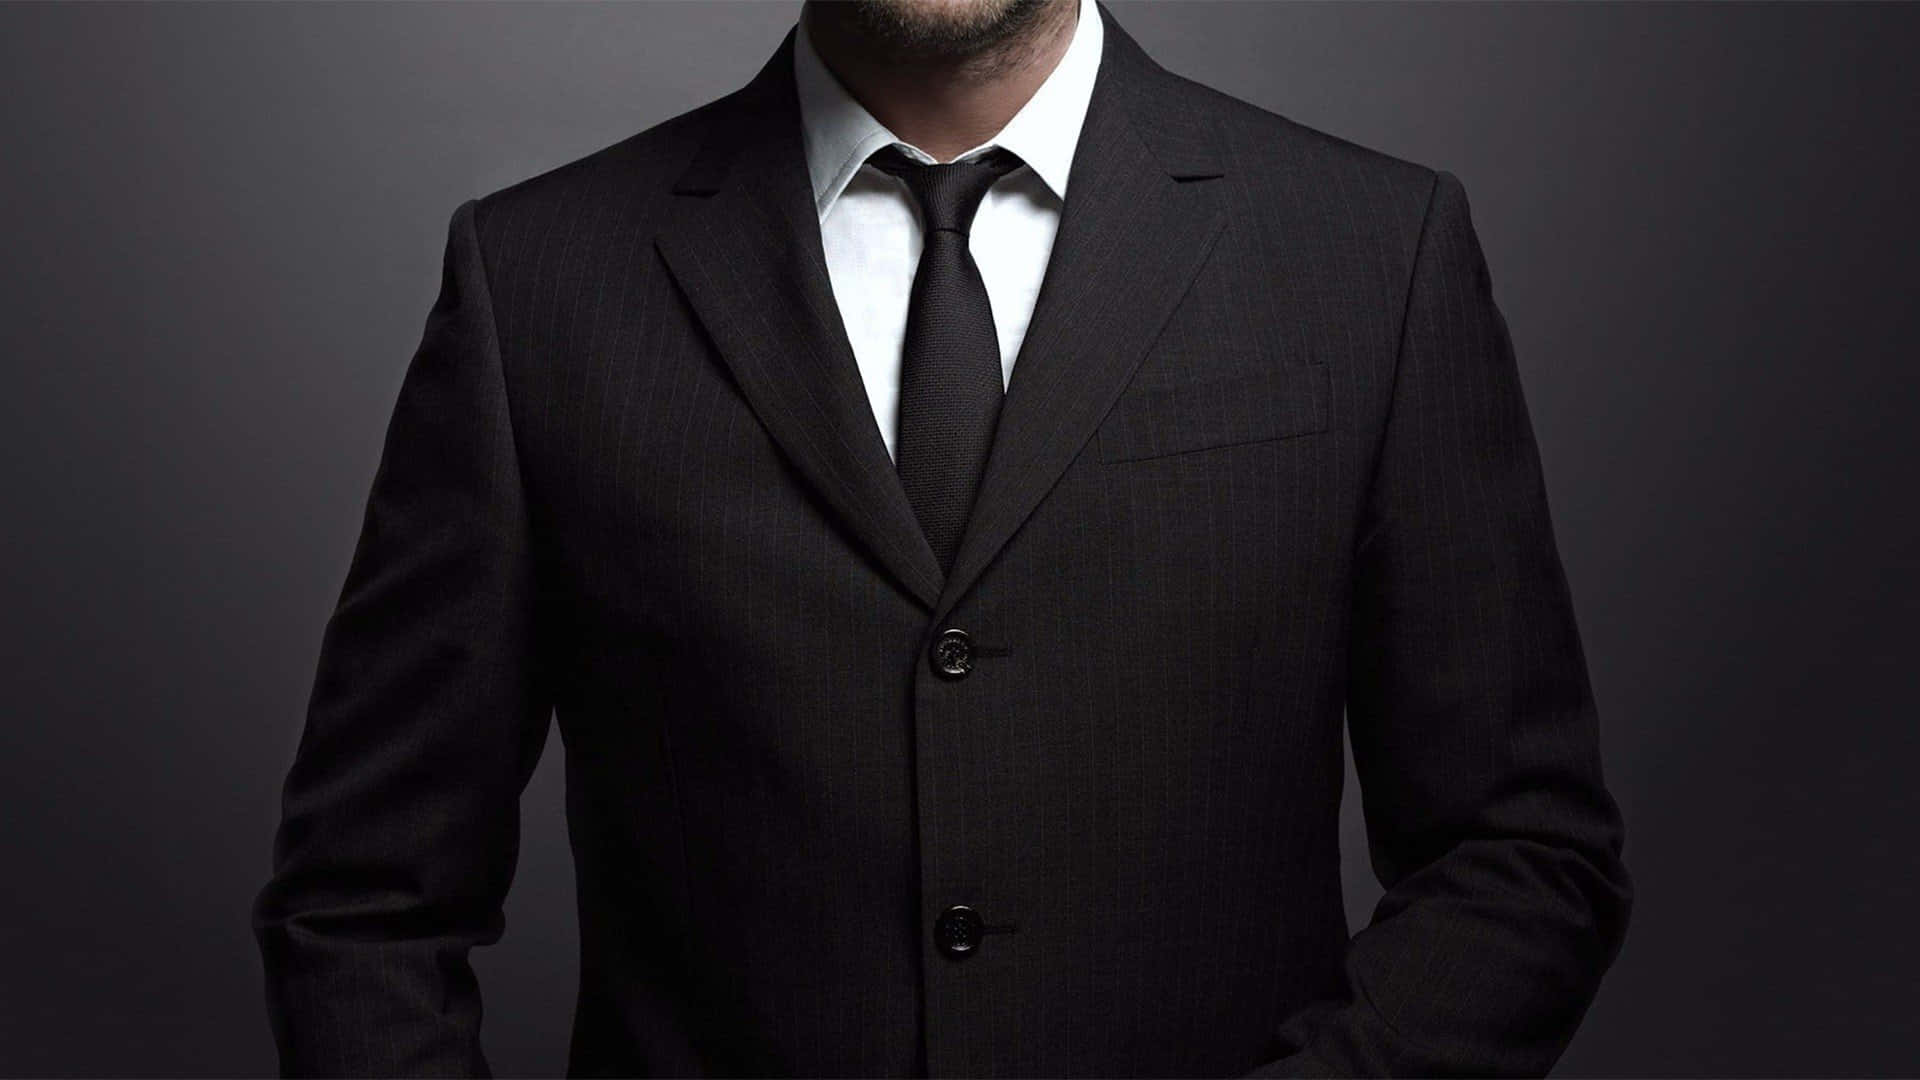 Black Tie With A Black Men Suit Wallpaper